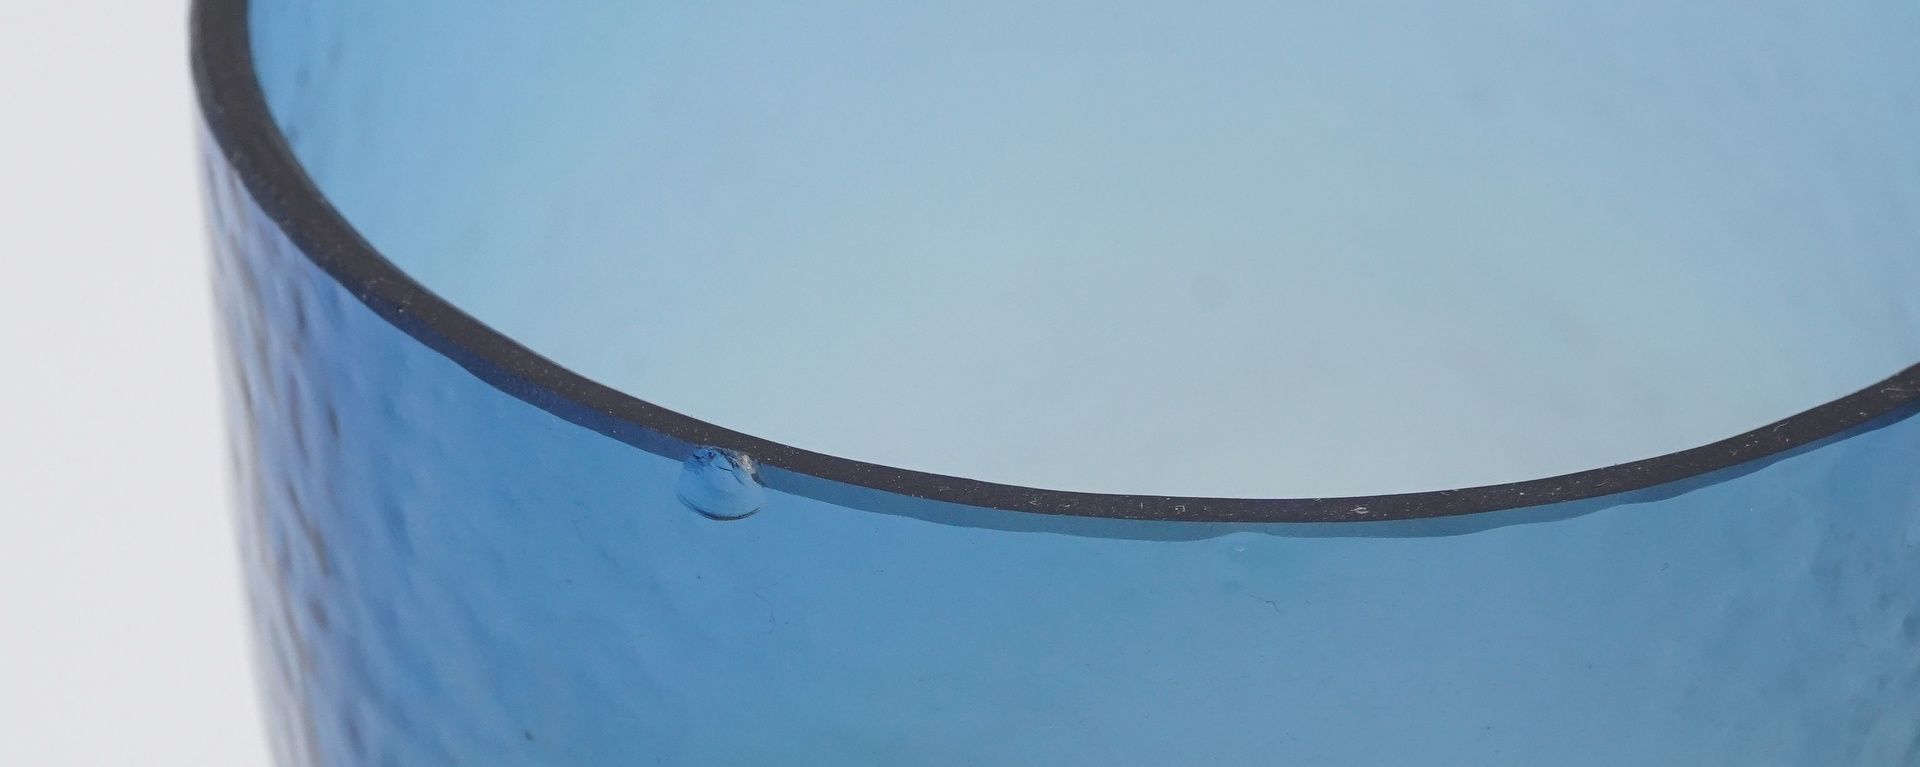 Drei Ajeto Böhmen WassergläserGlas von violett zu bläulich überlaufend, zylindrisch gebogener Korpus - Bild 3 aus 3